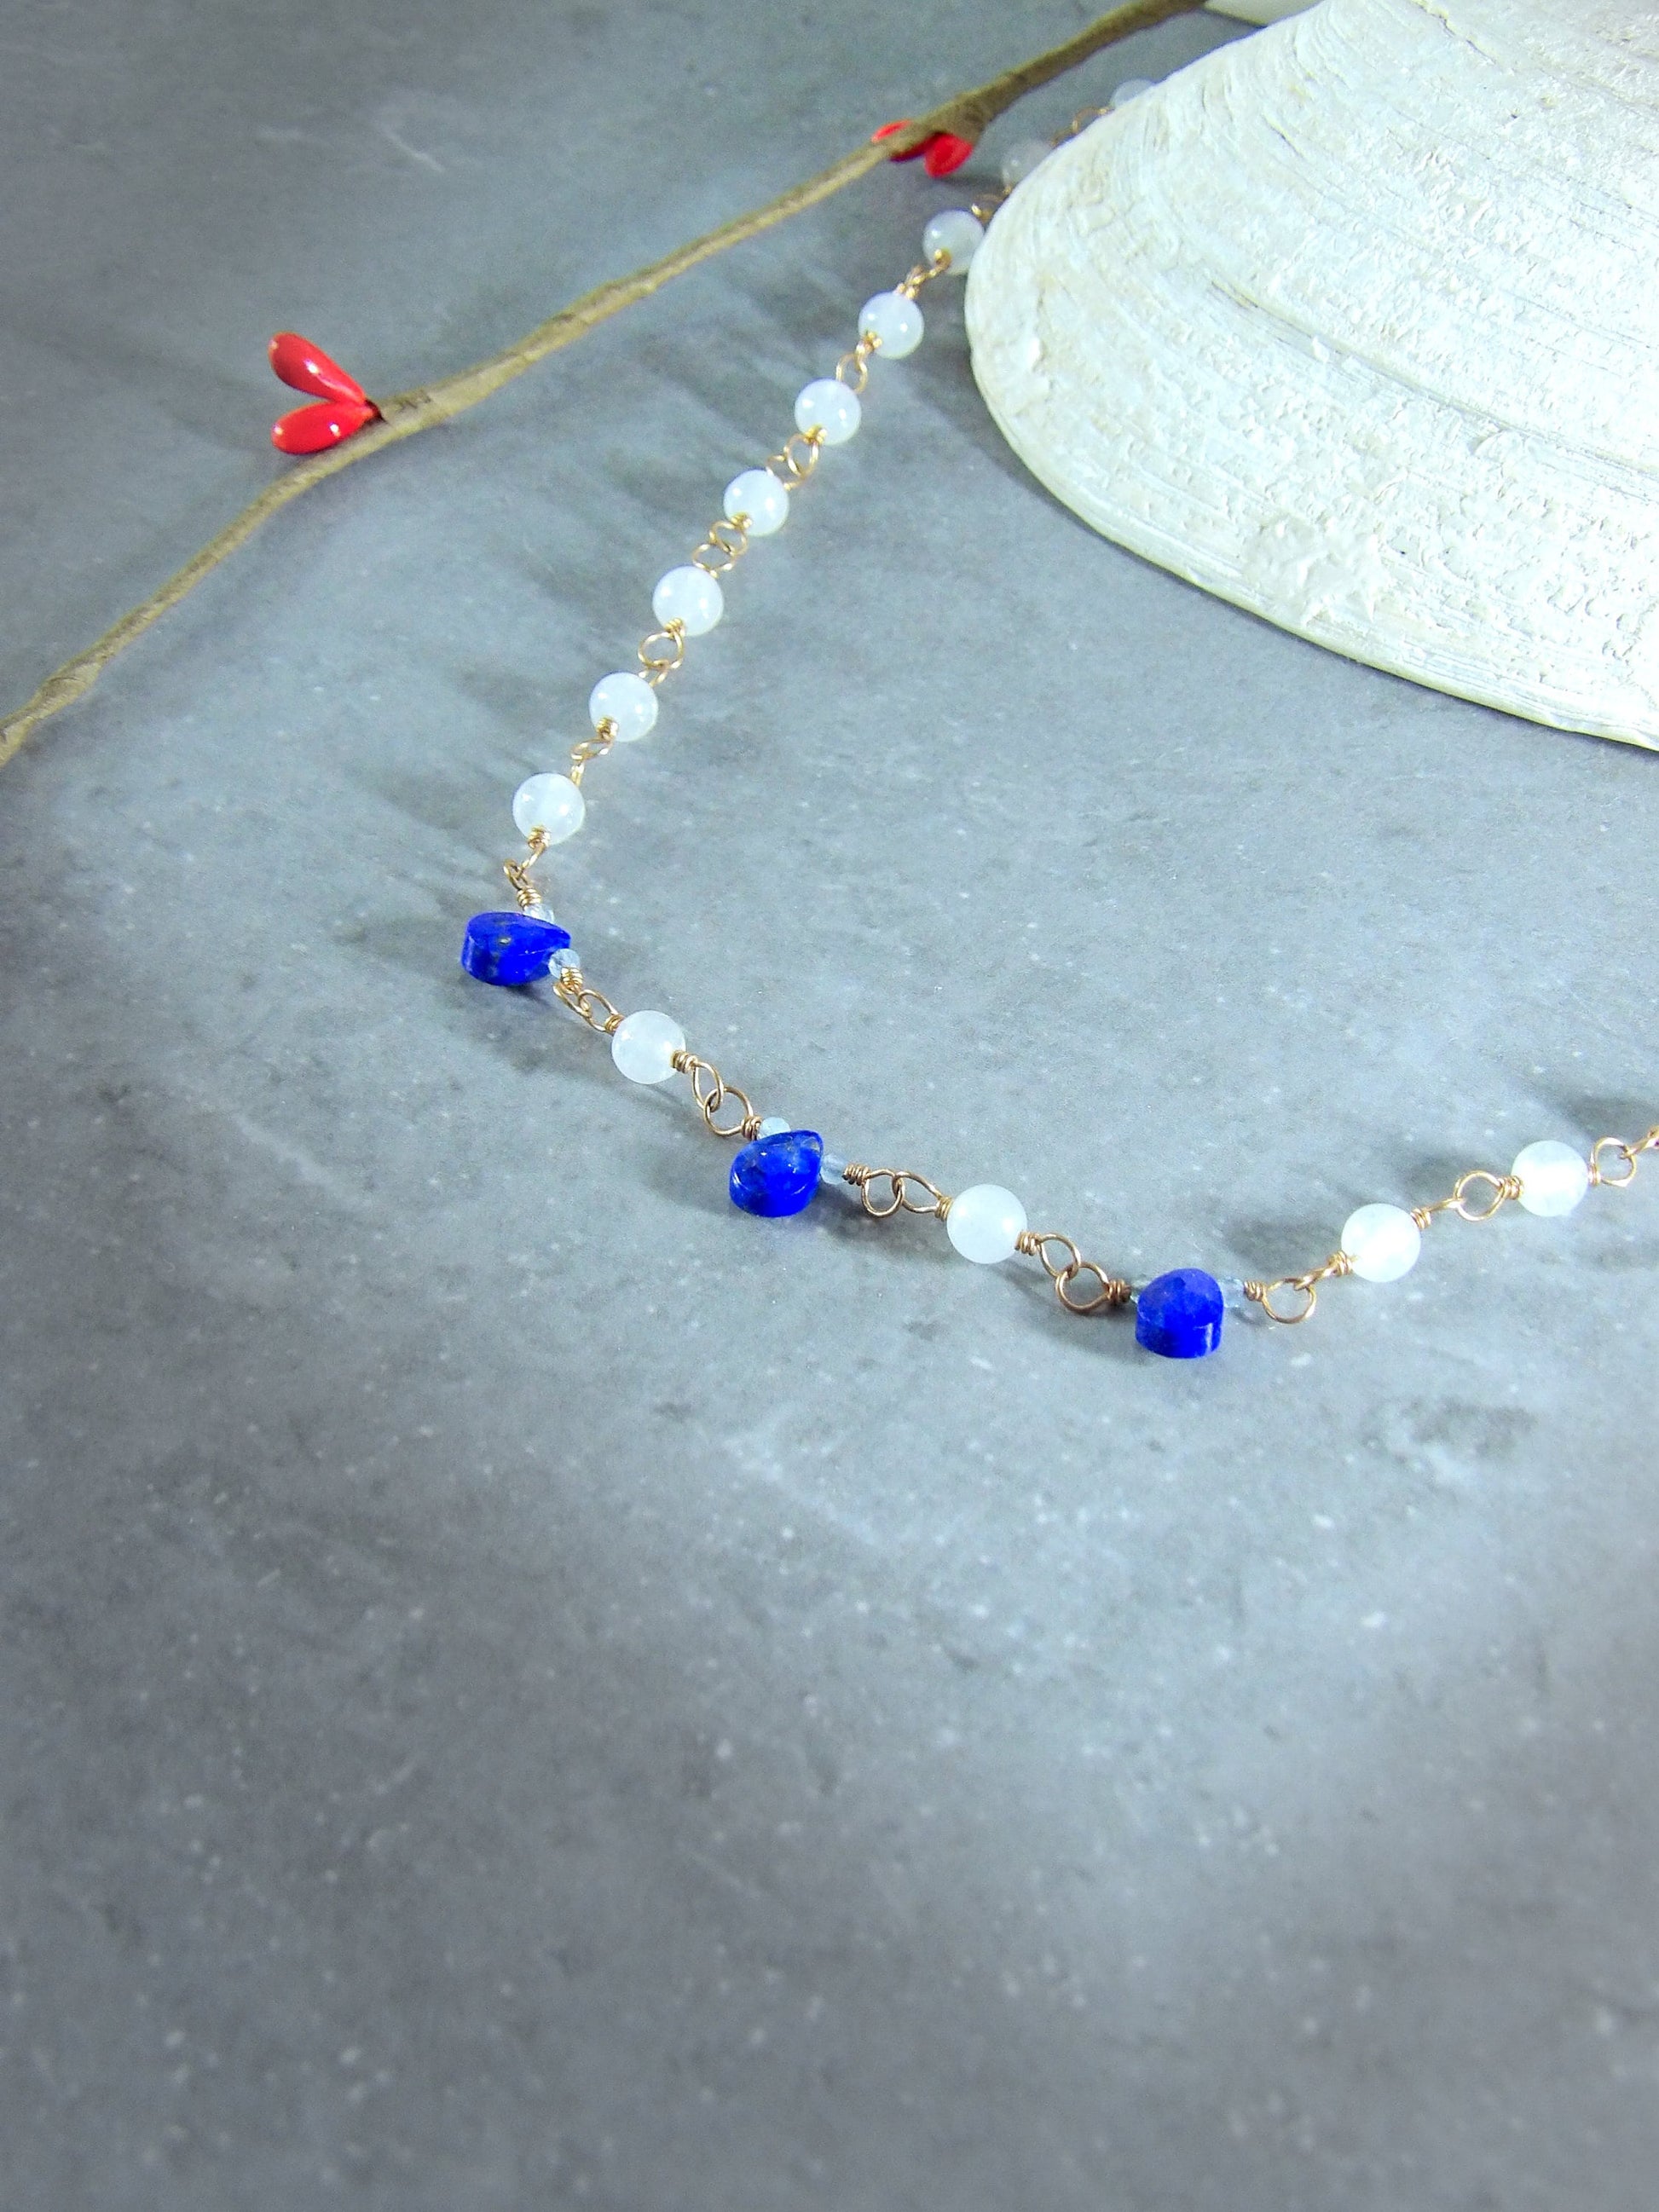 lapis lazuli white jade aquamarine boho necklace. beaded boho necklace. Natural gemstone necklace. Boho hoop earrings. Beaded earrings.